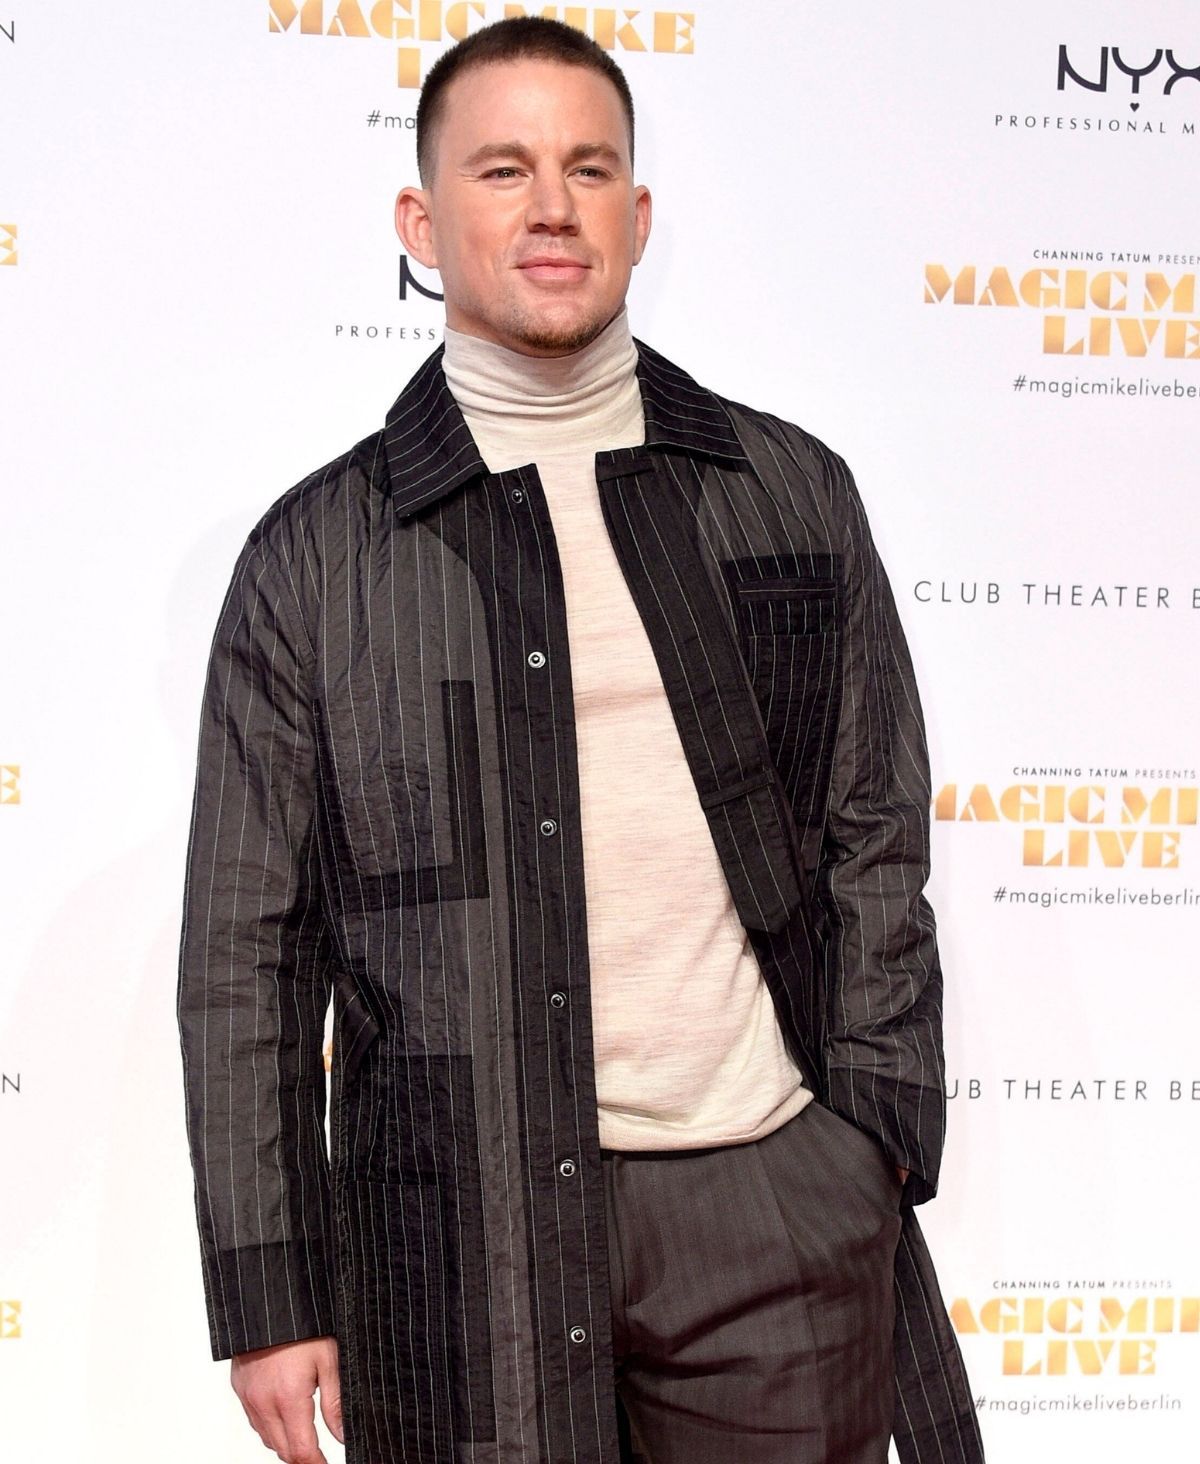 Riesen-Ehre: Channing Tatum darf endlich Versace tragen